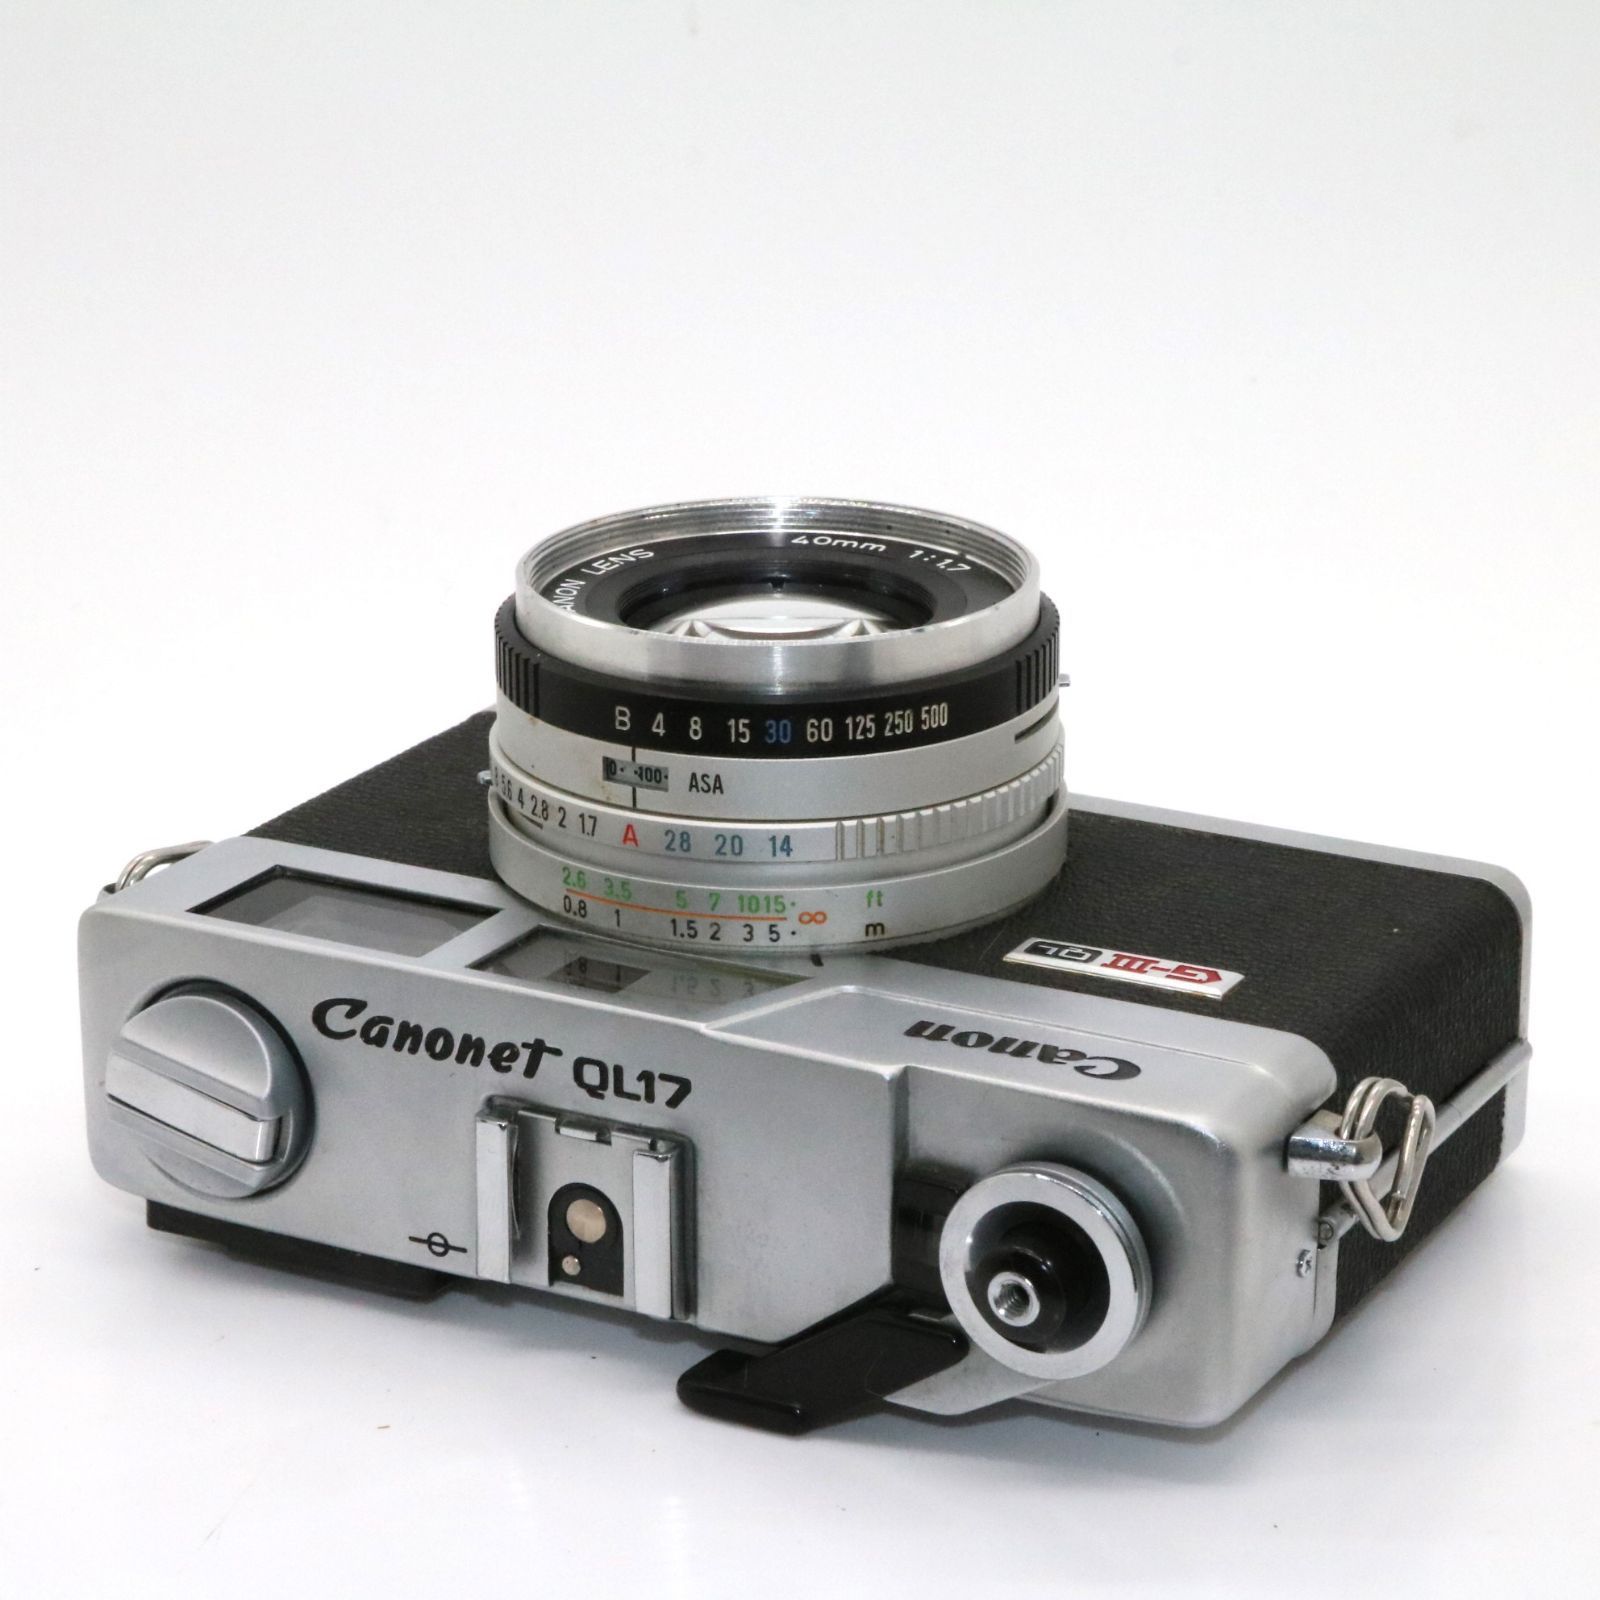 Canon キヤノン Canonet QL17 G-Ⅲ レンジファインダーフィルムカメラ ...